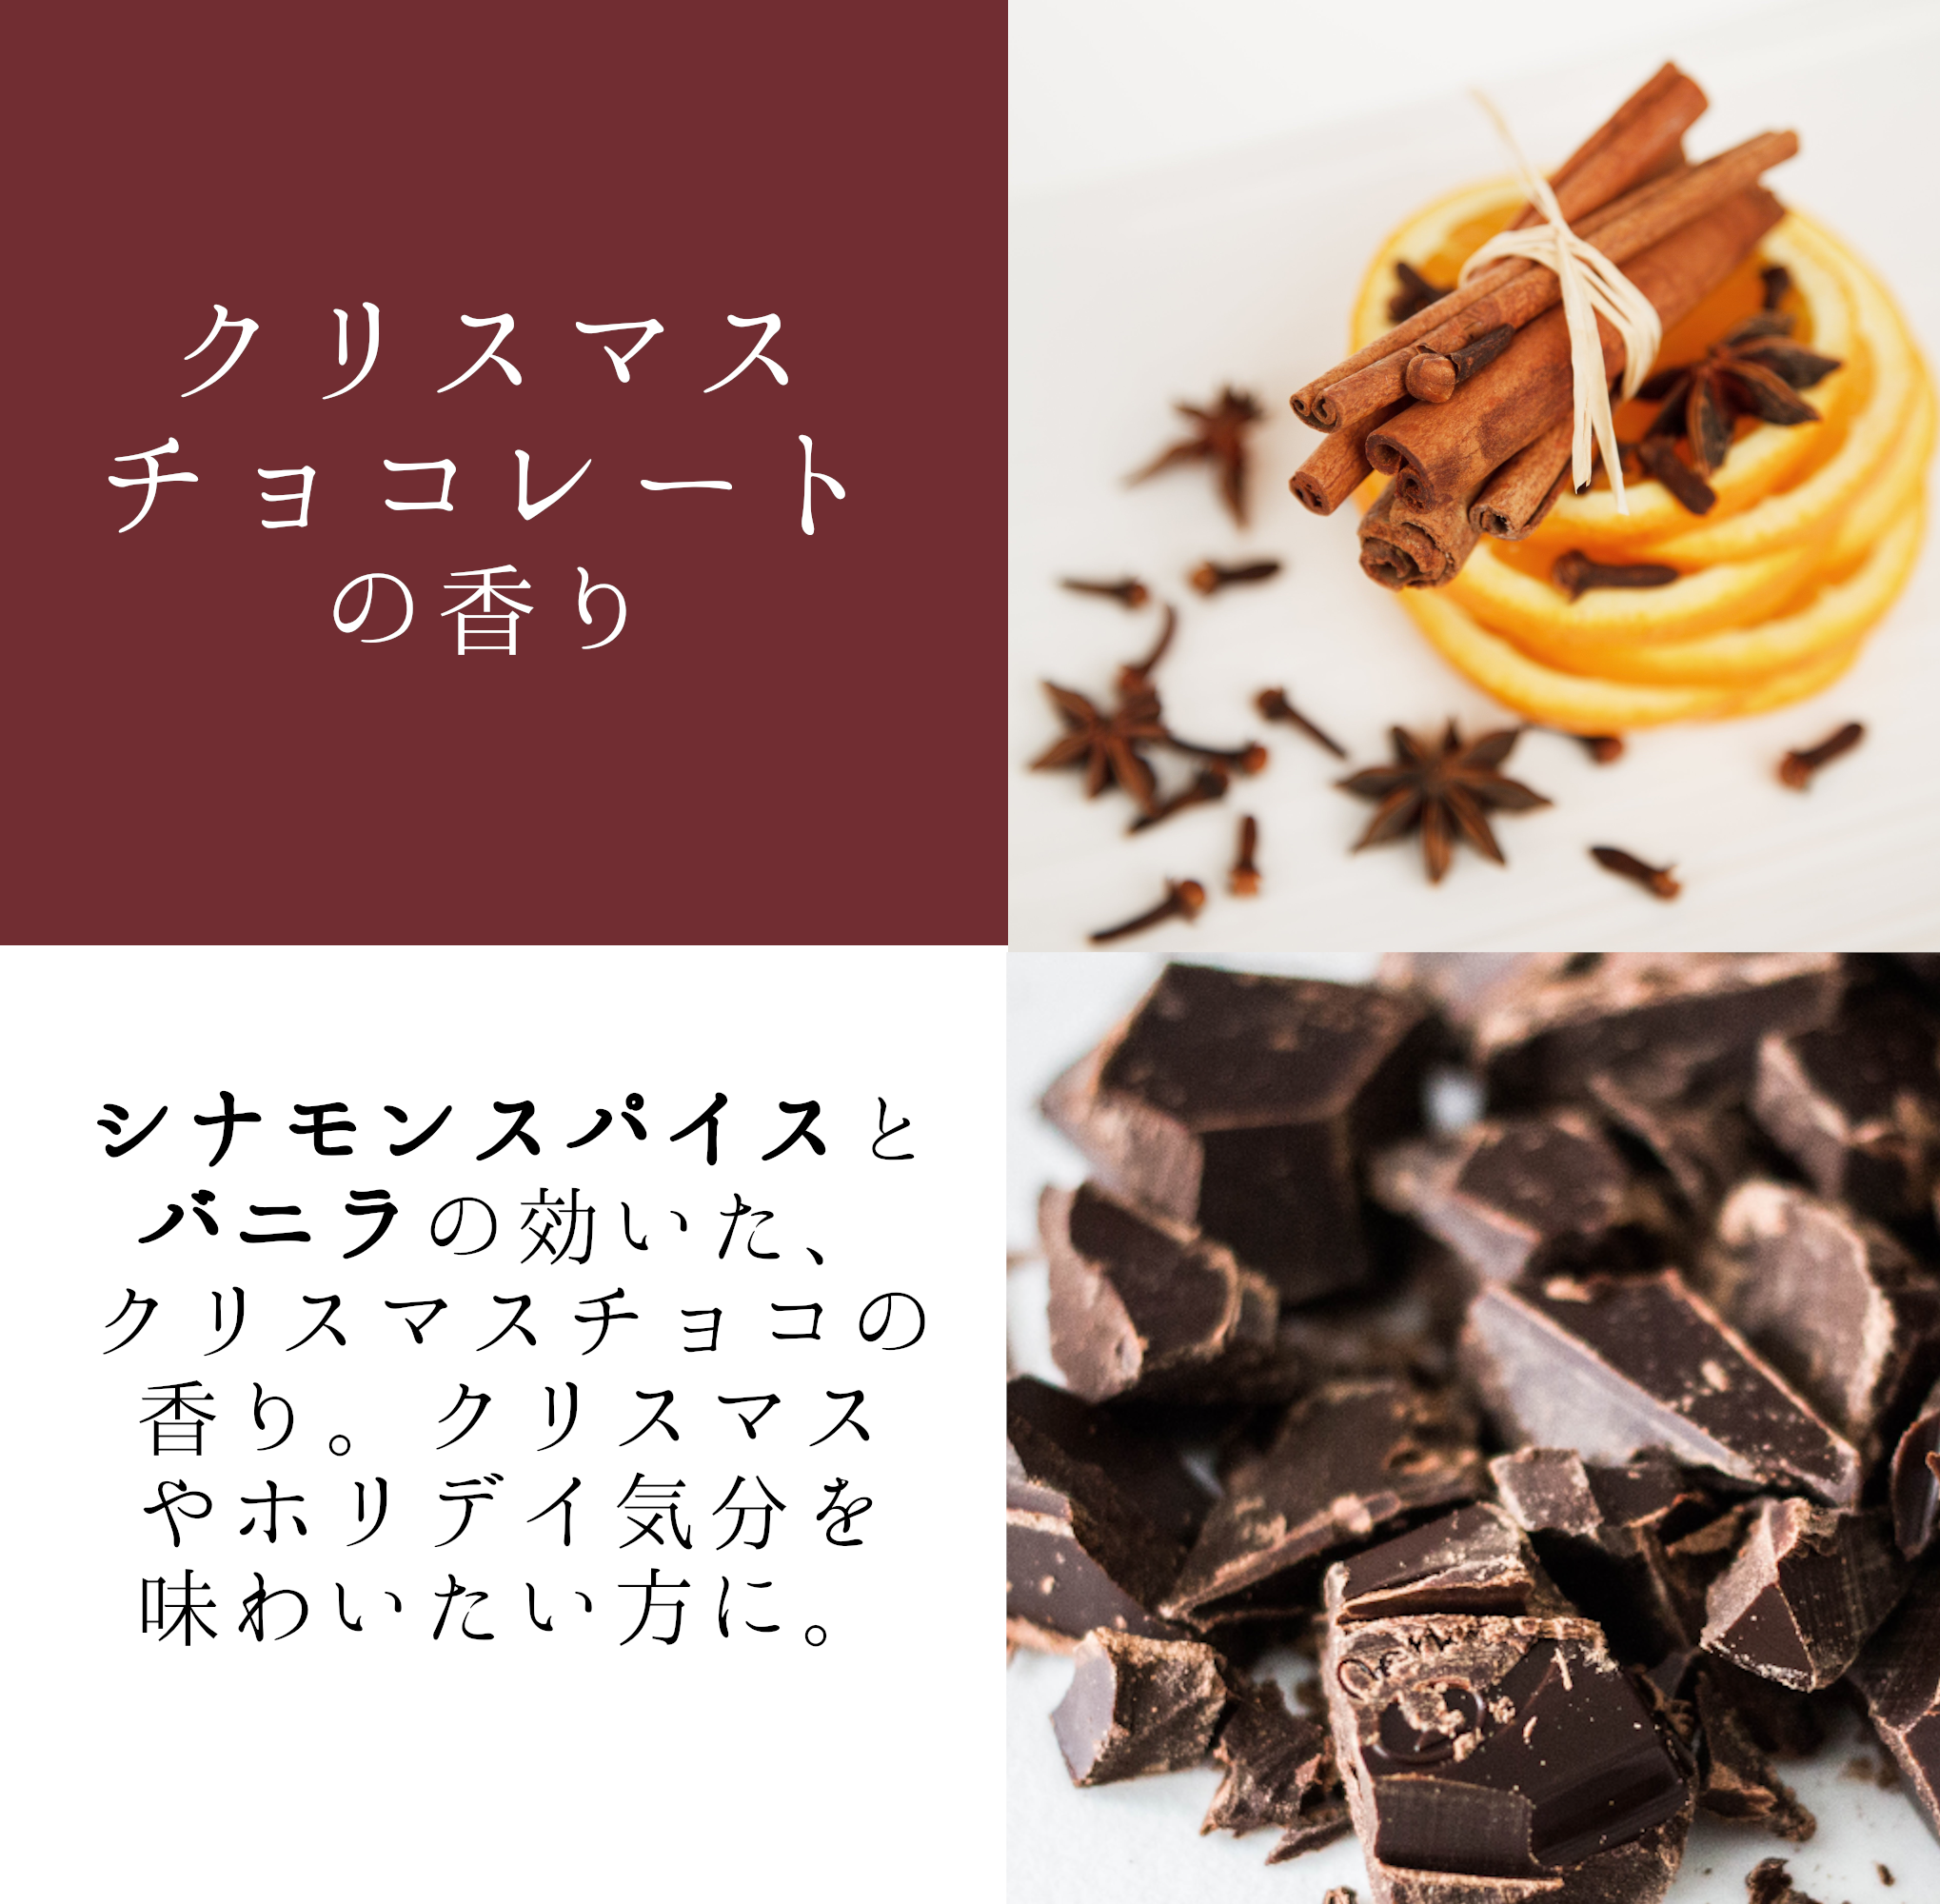 クリスマス チョコレート 天然アロマキャンドル シナモン チョコ Iichi ハンドメイド クラフト作品 手仕事品の通販